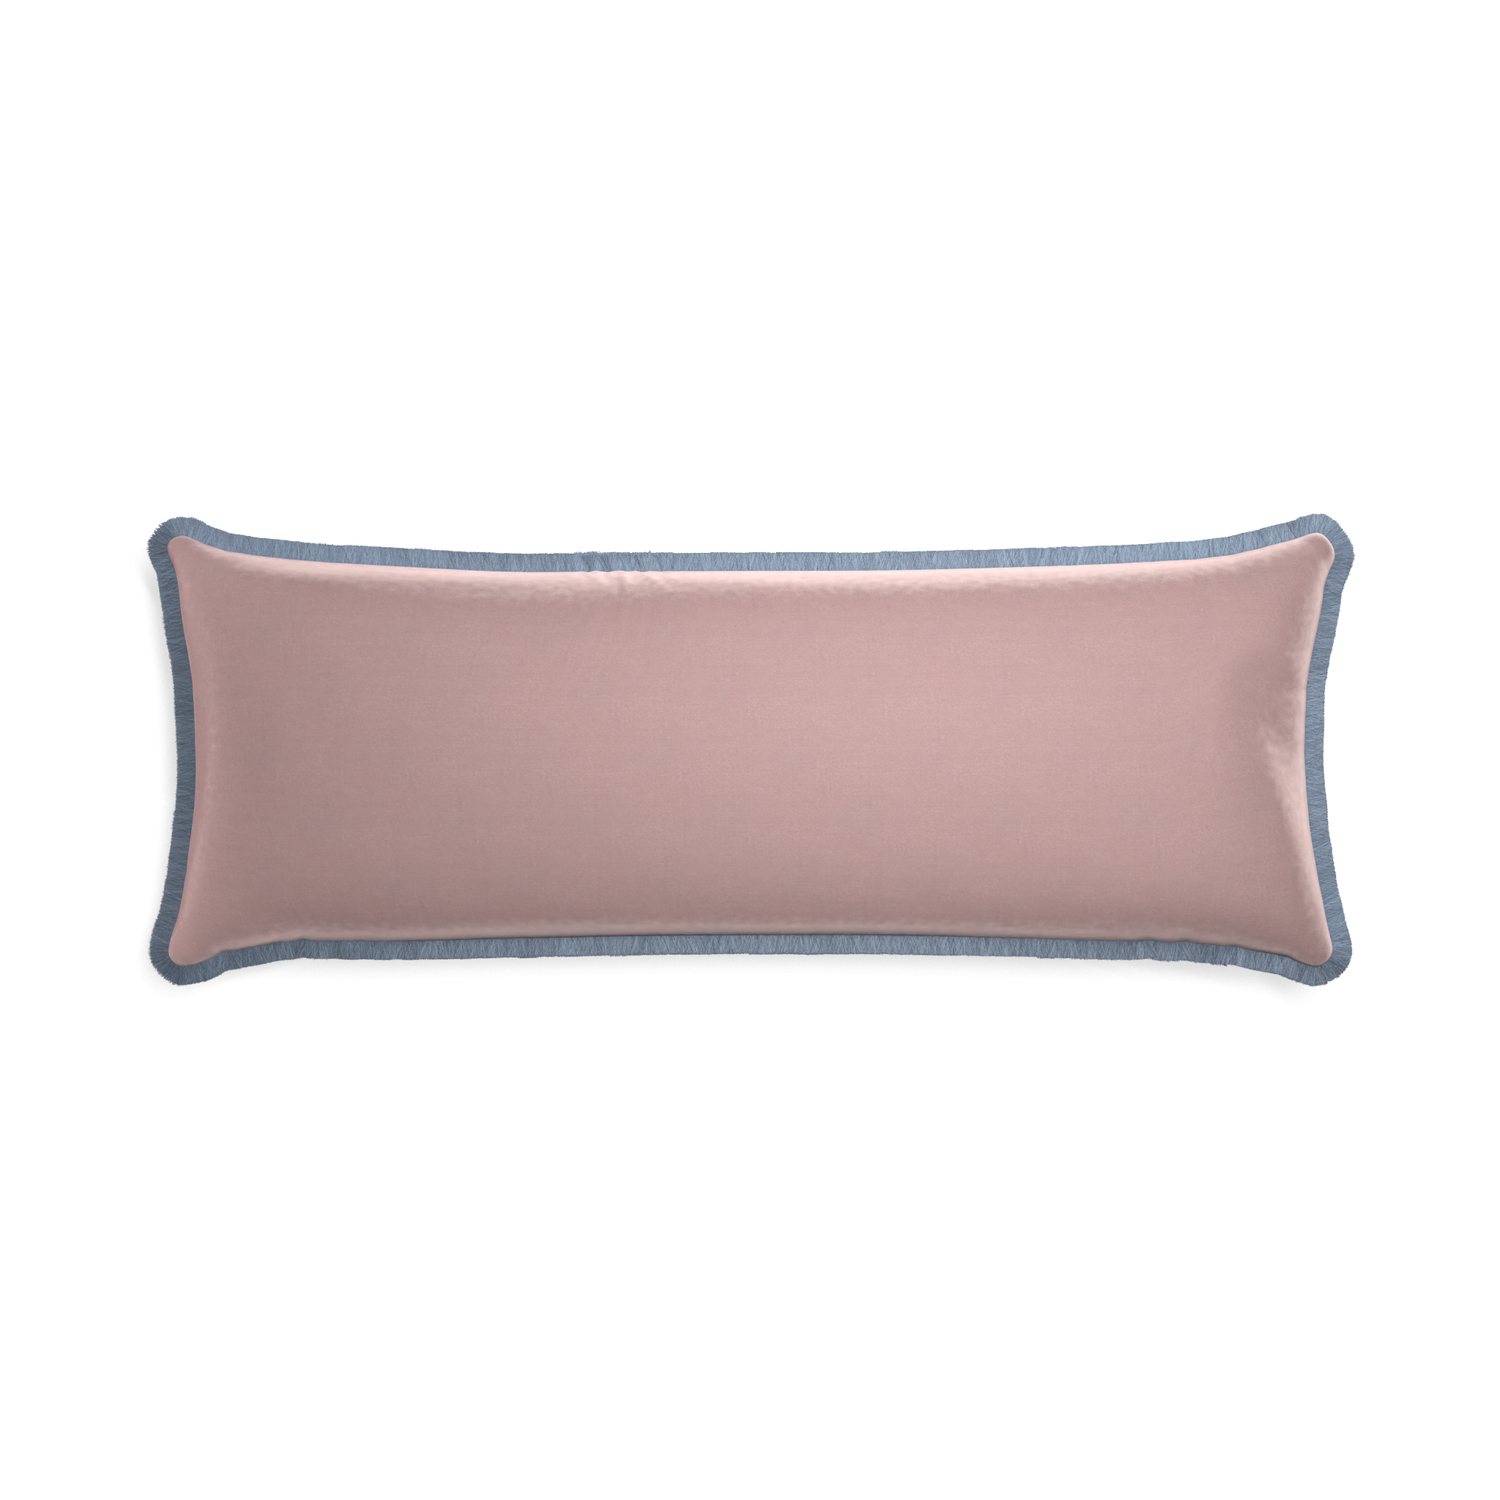 Xl-lumbar mauve velvet custom pillow with sky fringe on white background